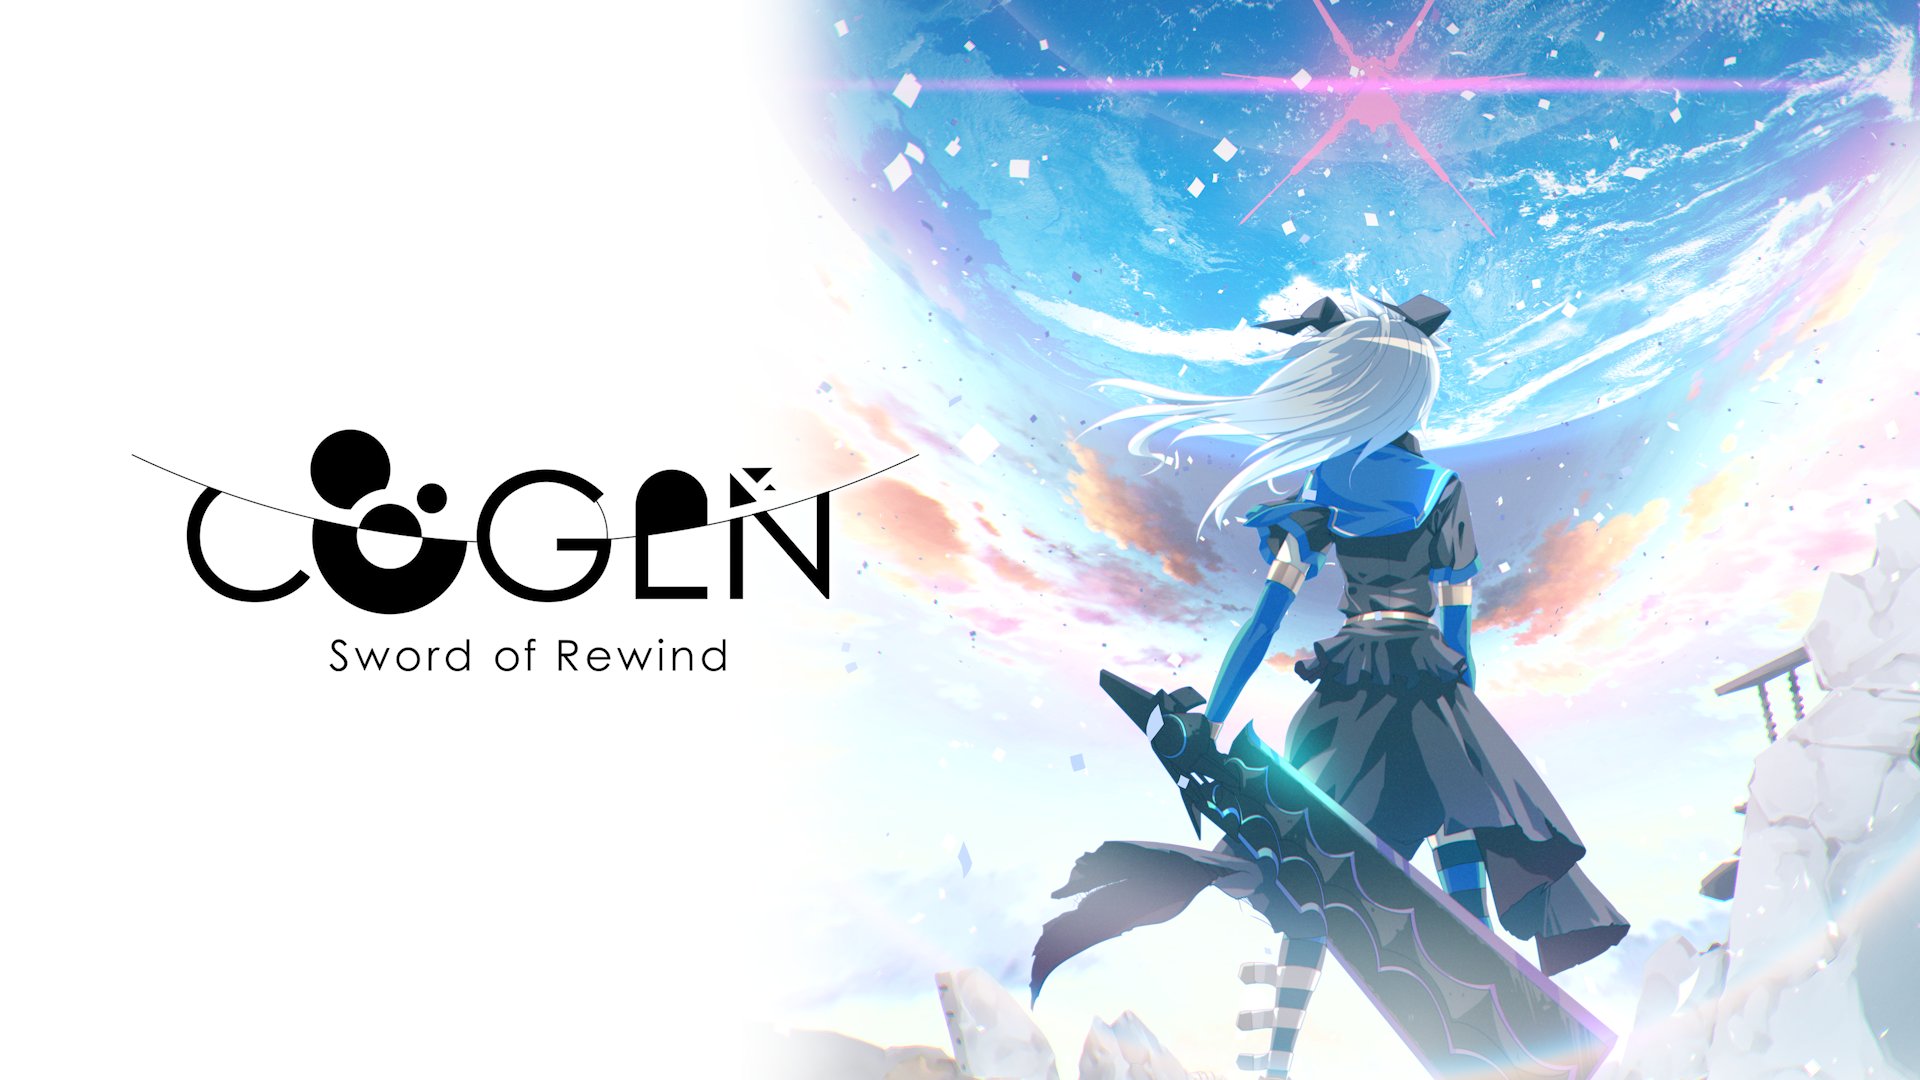 Video Game Cogen: Sword of Rewind HD Wallpaper